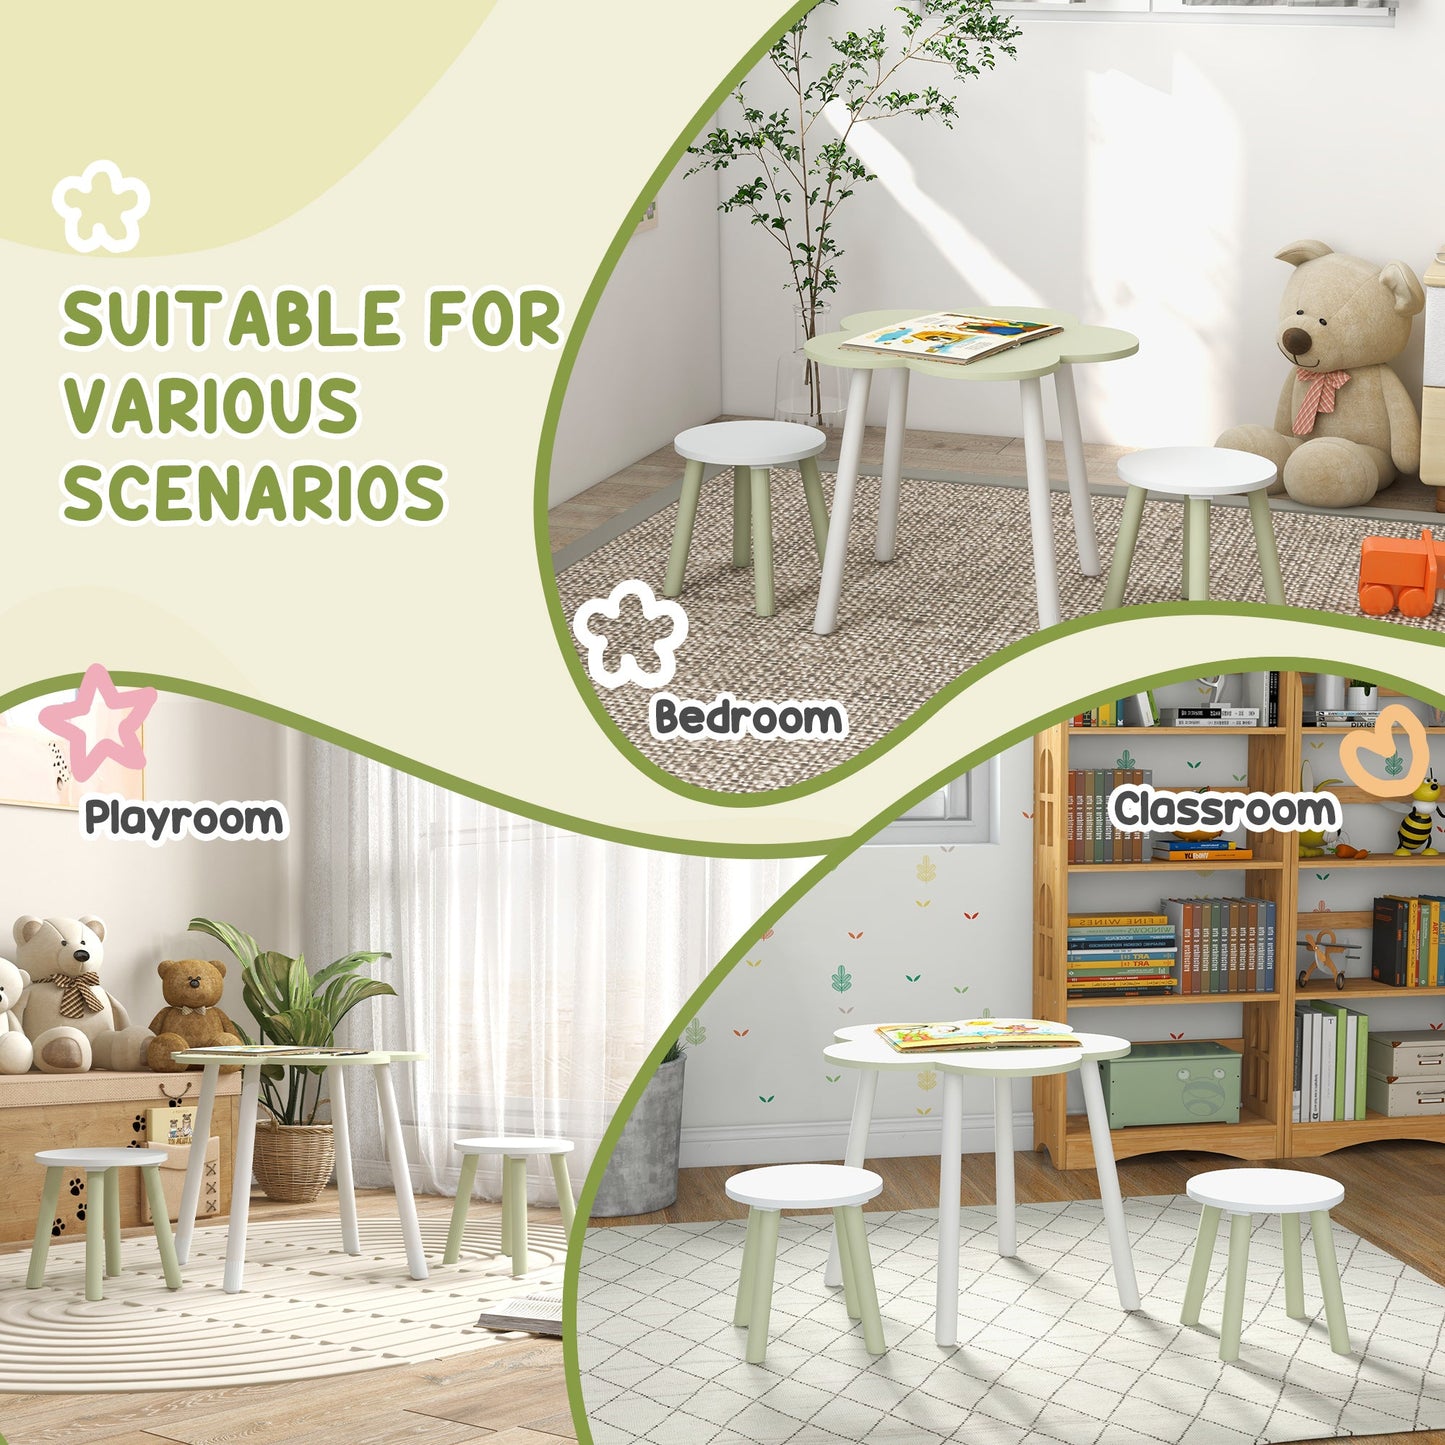 ZONEKIZ 5 Piece Kids Furniture Set Flower Design For 3-5 Years